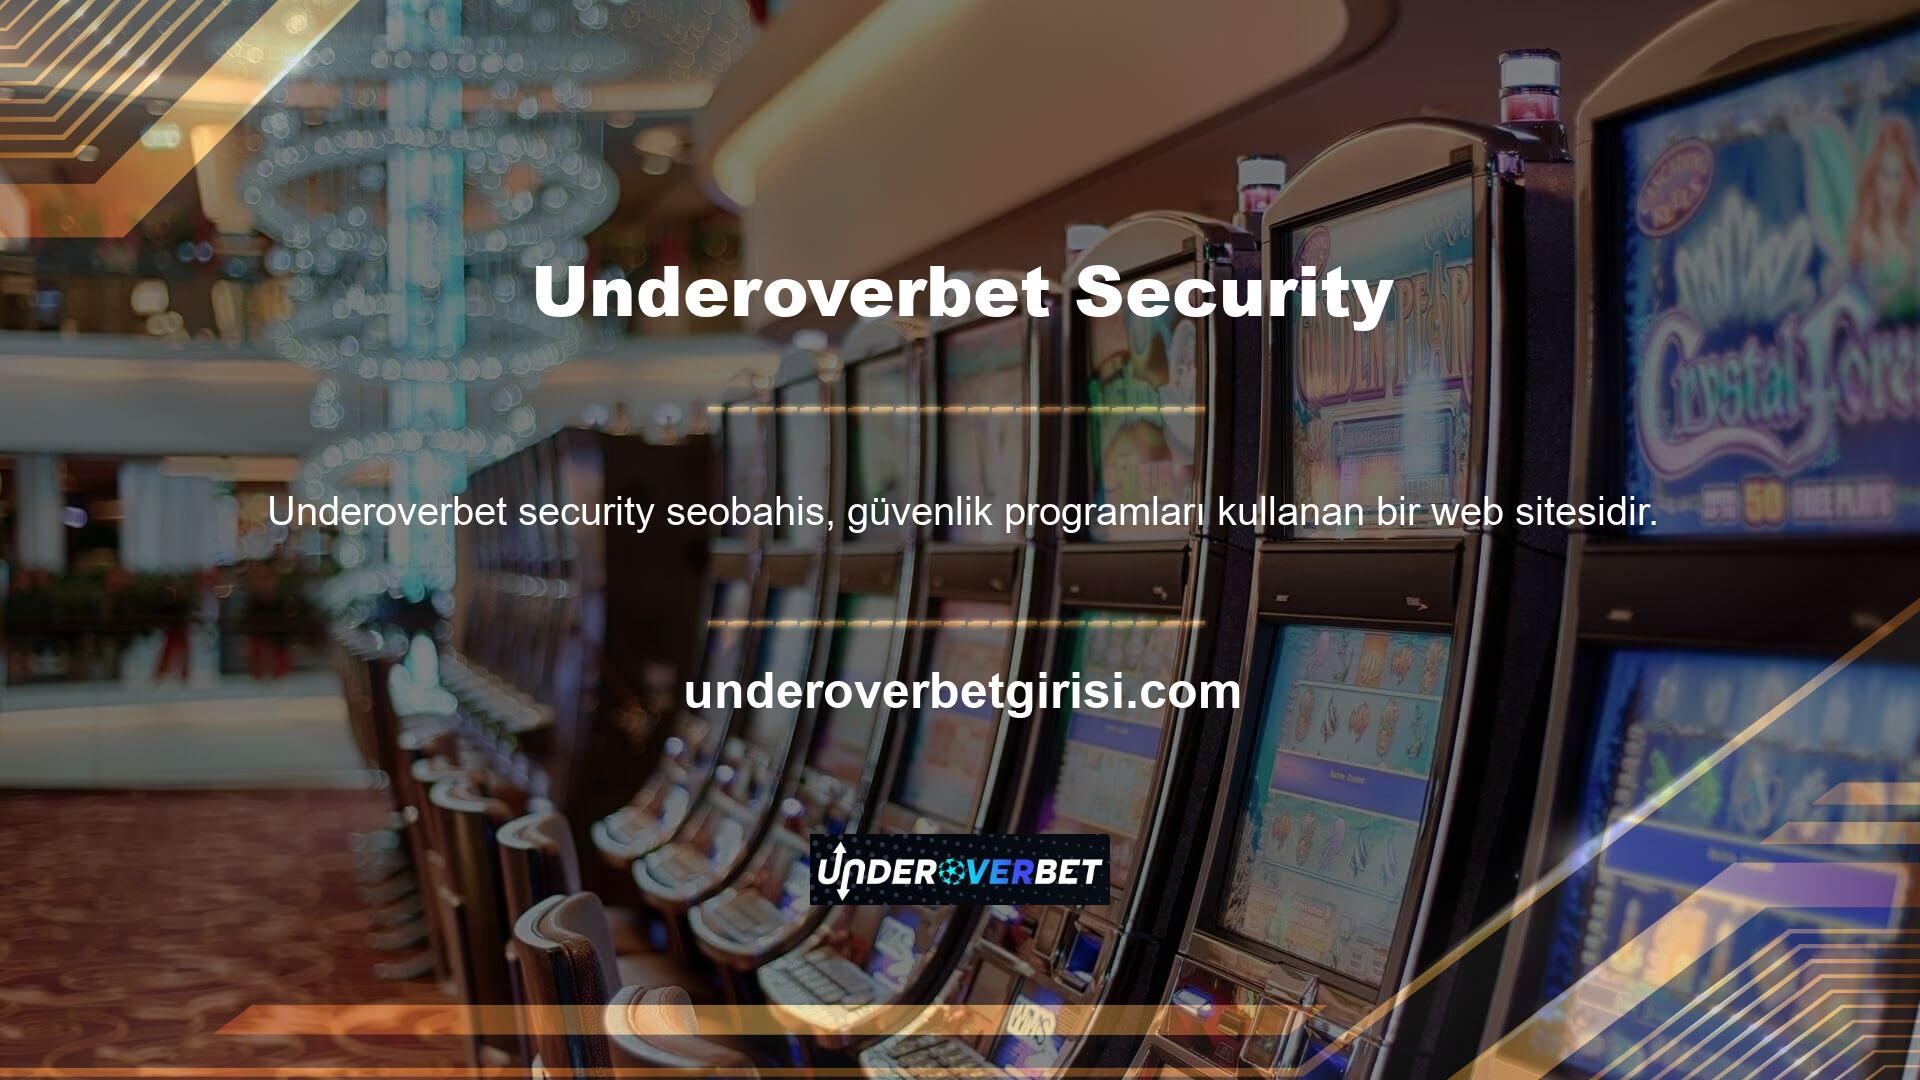 Underoverbet, güvenlik programları kullanan bir web sitesidir